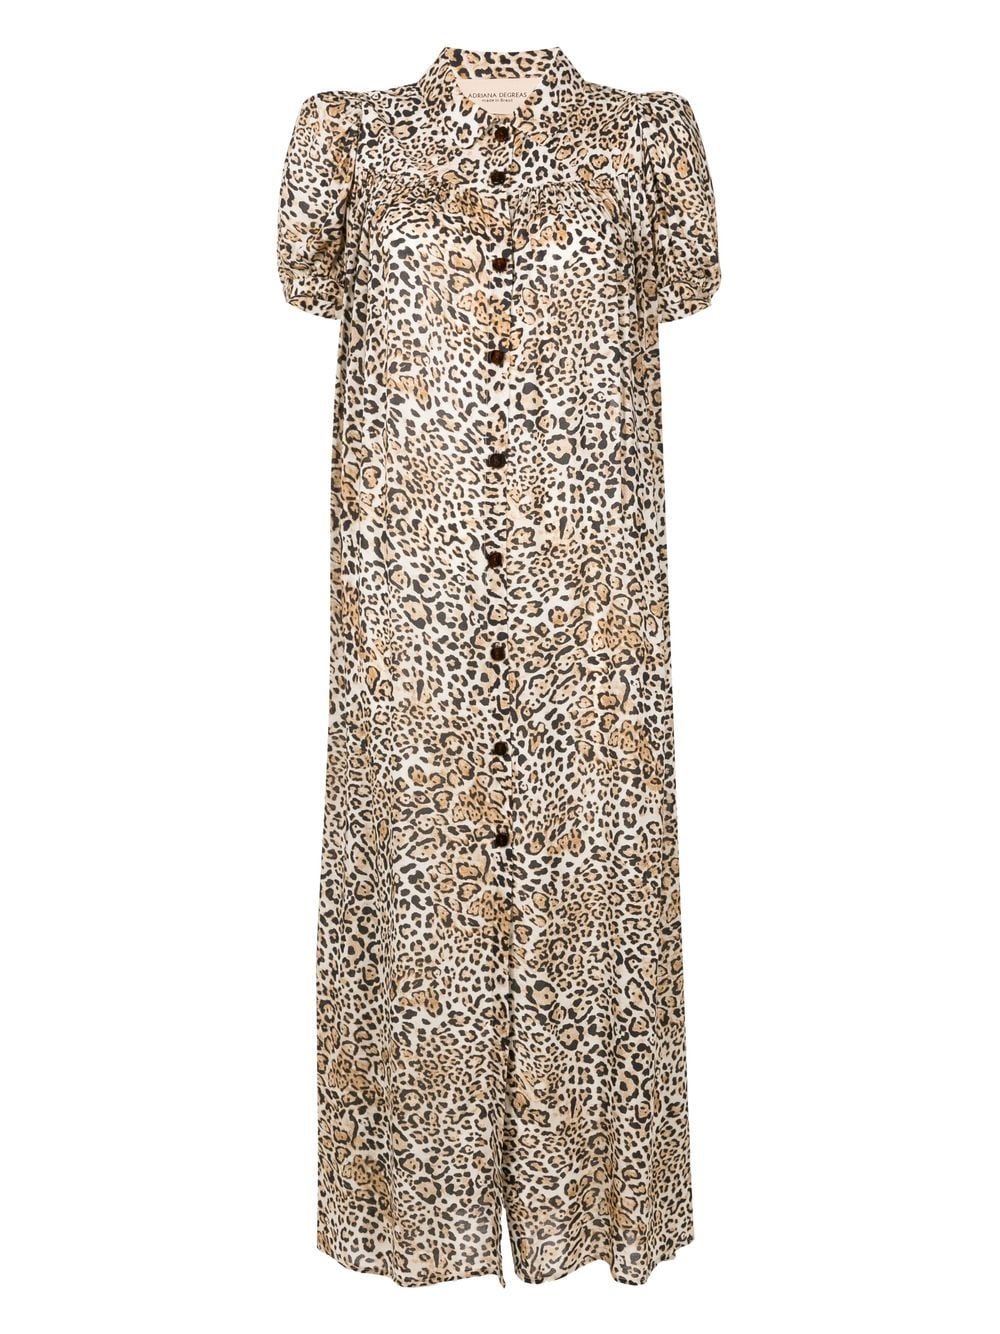 Leopard Chemise Dress